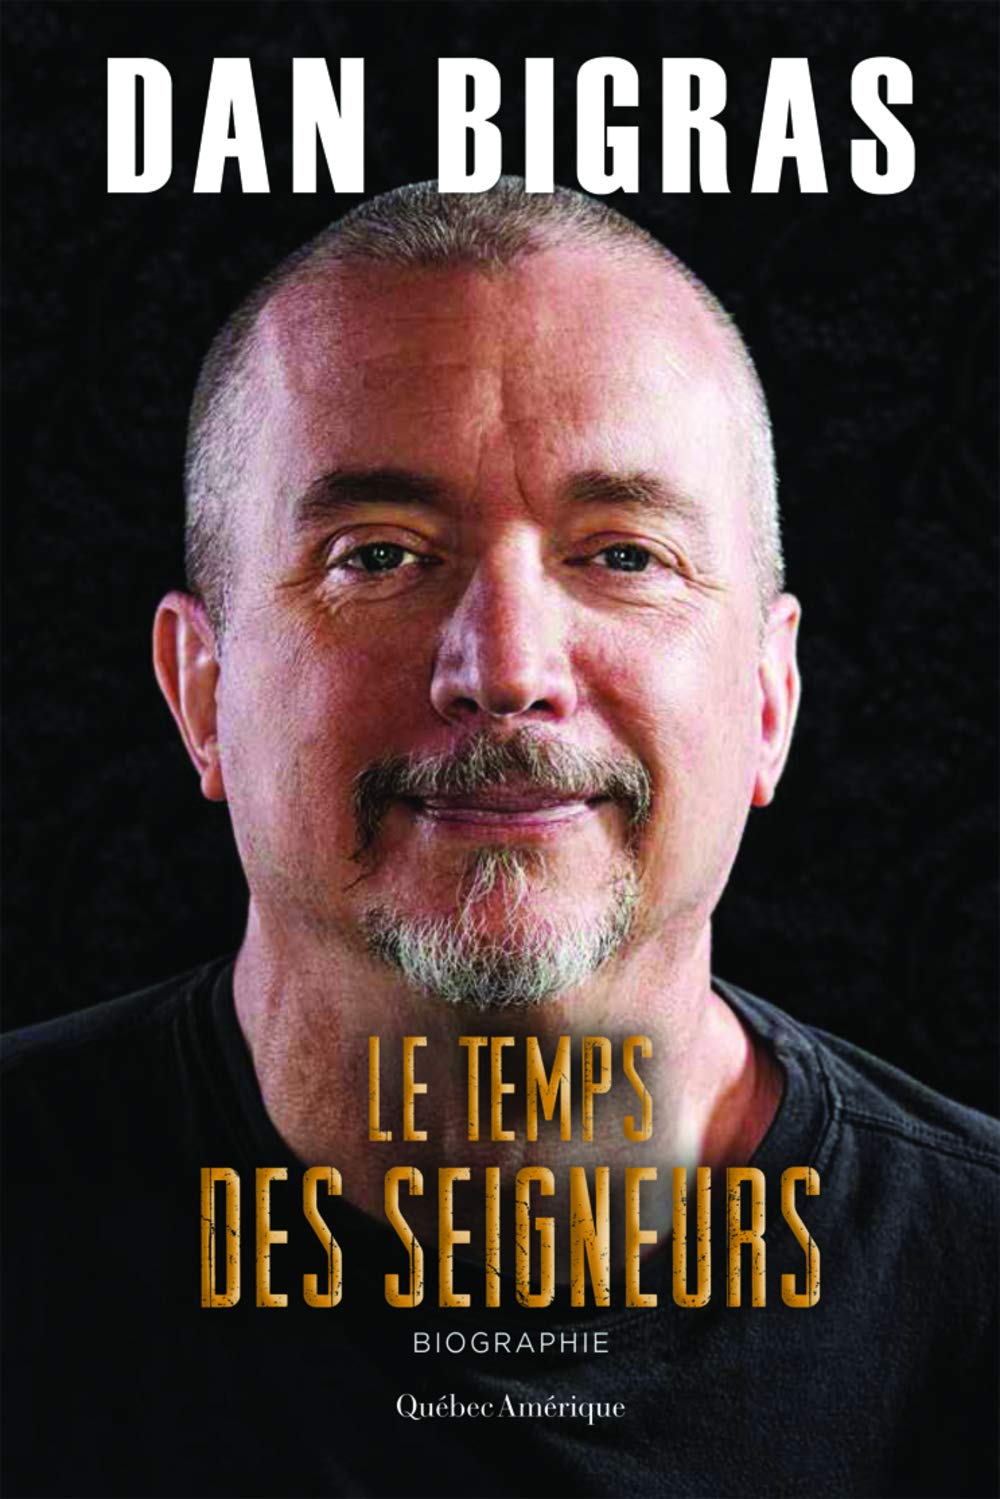 Livre ISBN 2764434669 Le temps des seigneurs (Dan Bigras)